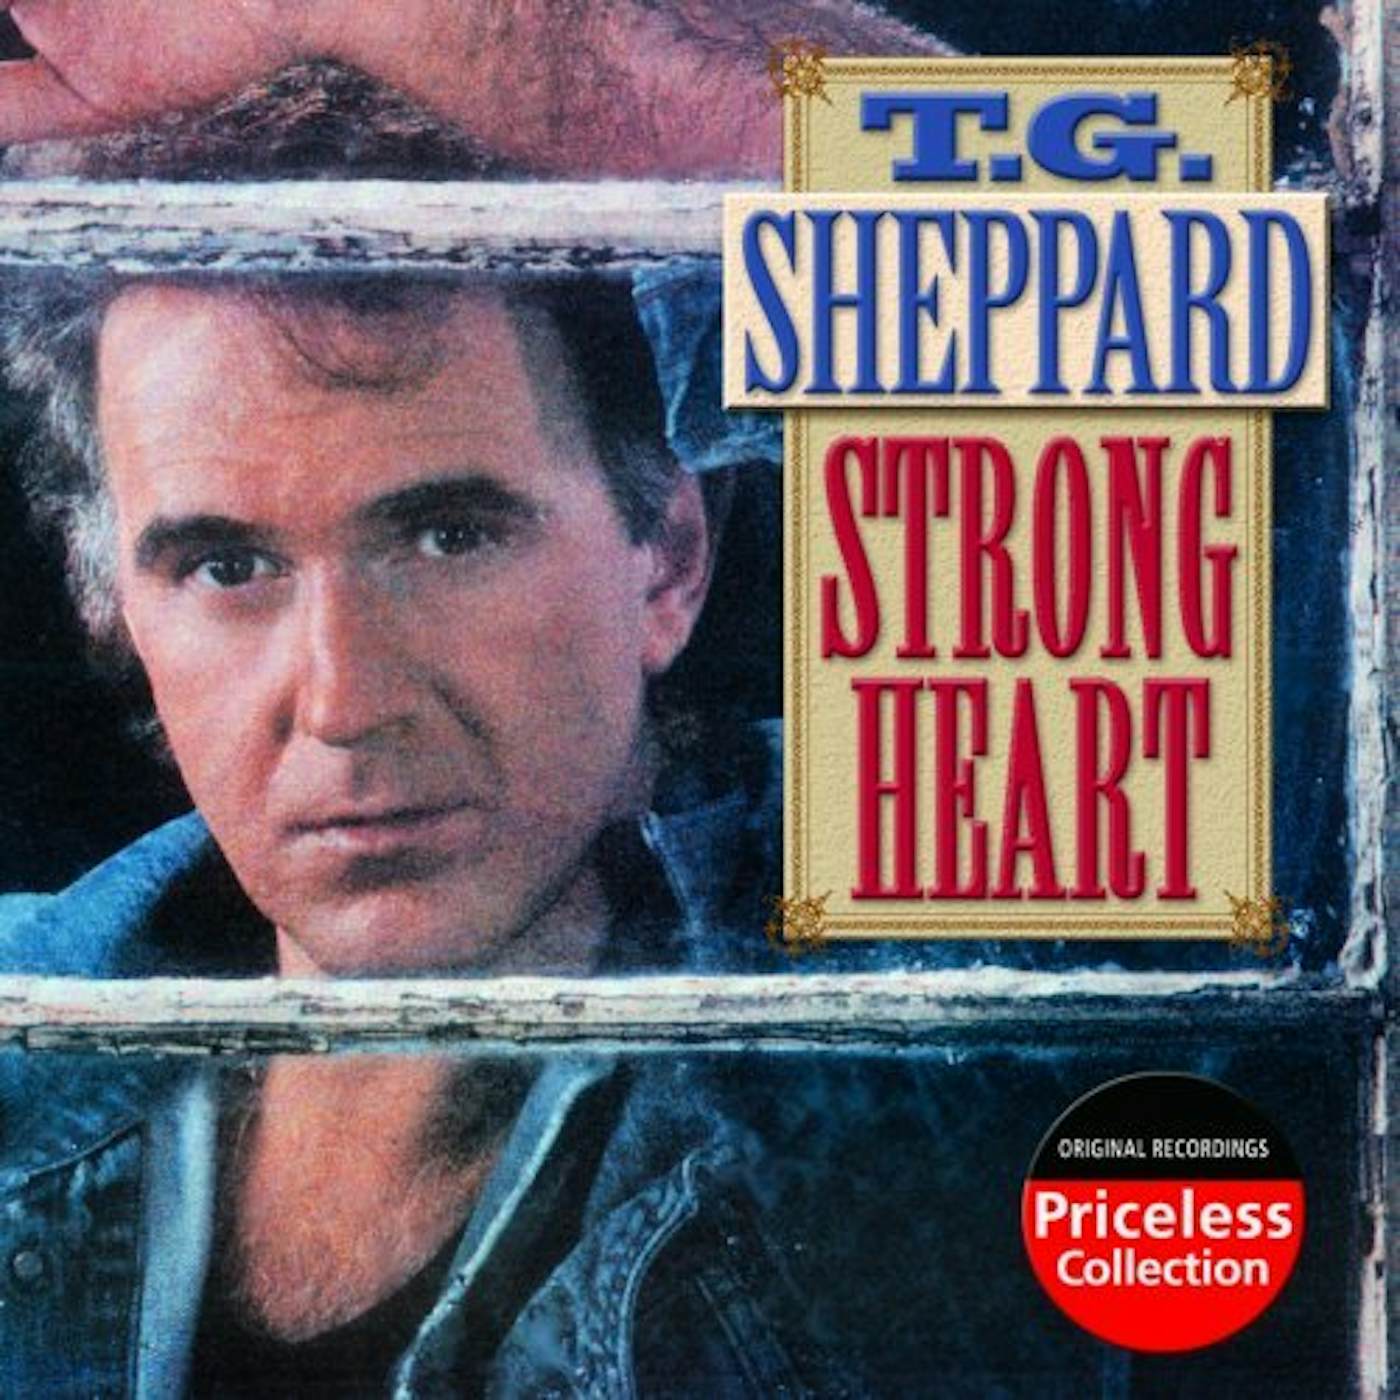 T.G. Sheppard STRONG HEART CD